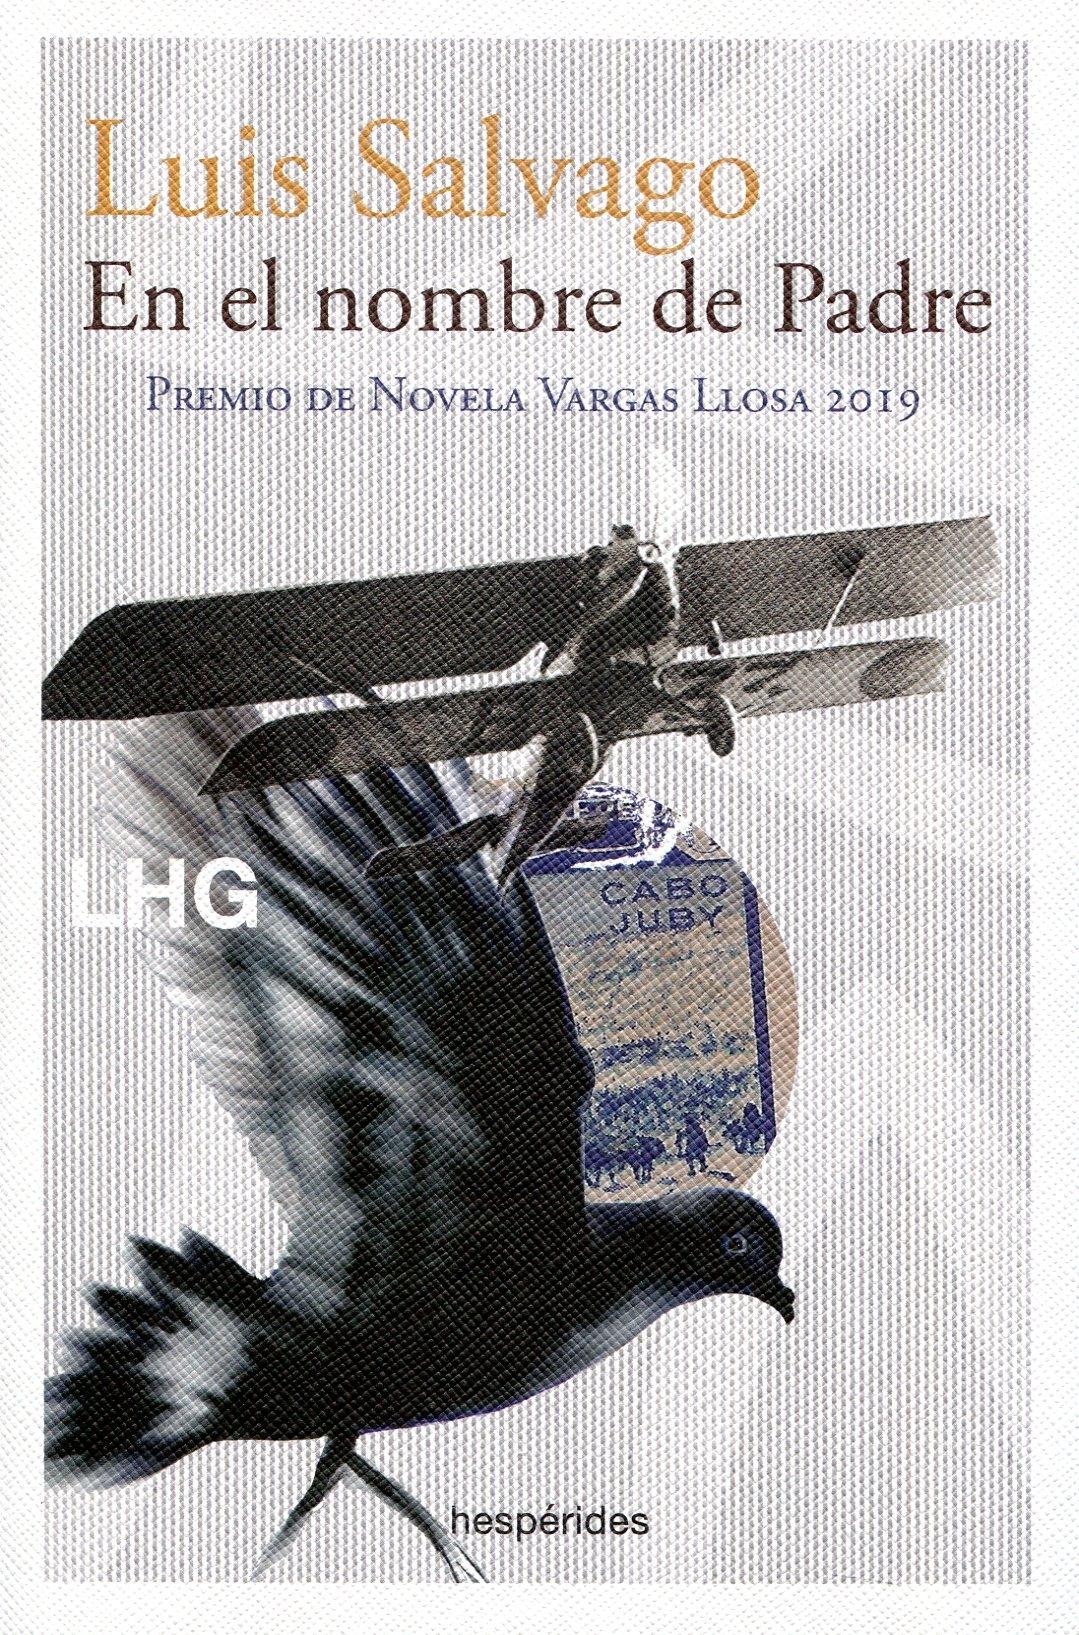 En el Nombre de Padre "Premio de Novela Vargas Llosa 2019"